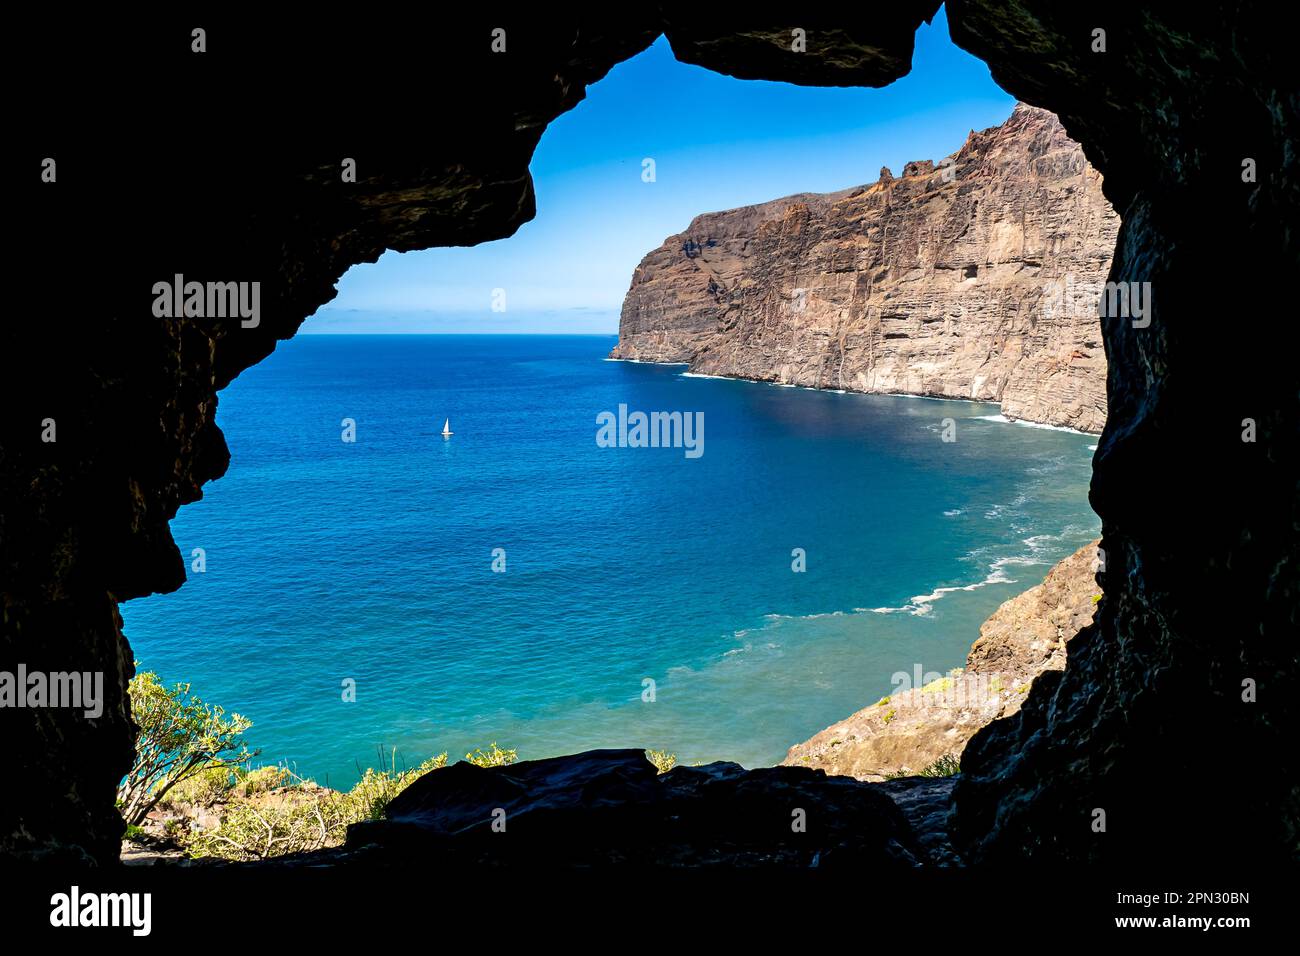 Ammira le acque della baia di Los Gigantes dall'ingresso di una piccola grotta, con le imponenti scogliere di Acantilados de Los Gigantes che torreggiano sul mare. Foto Stock